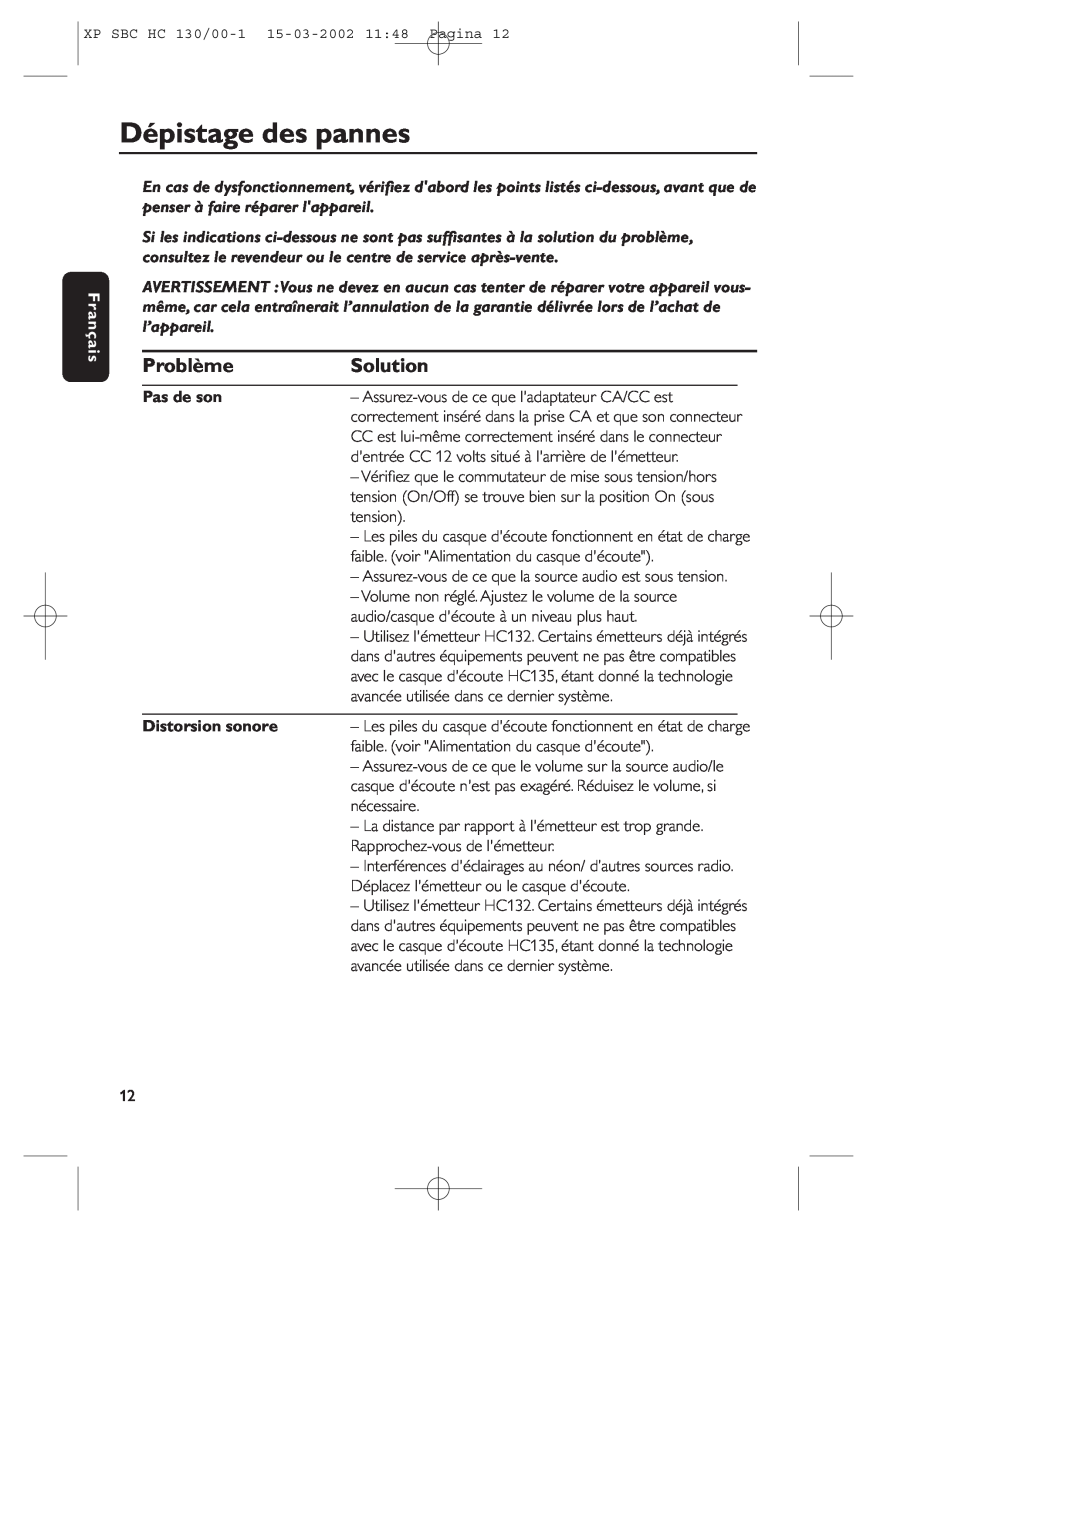 Philips SBC HC130 manual Dépistage des pannes, Problème, Solution, Français, Pas de son, Distorsion sonore 